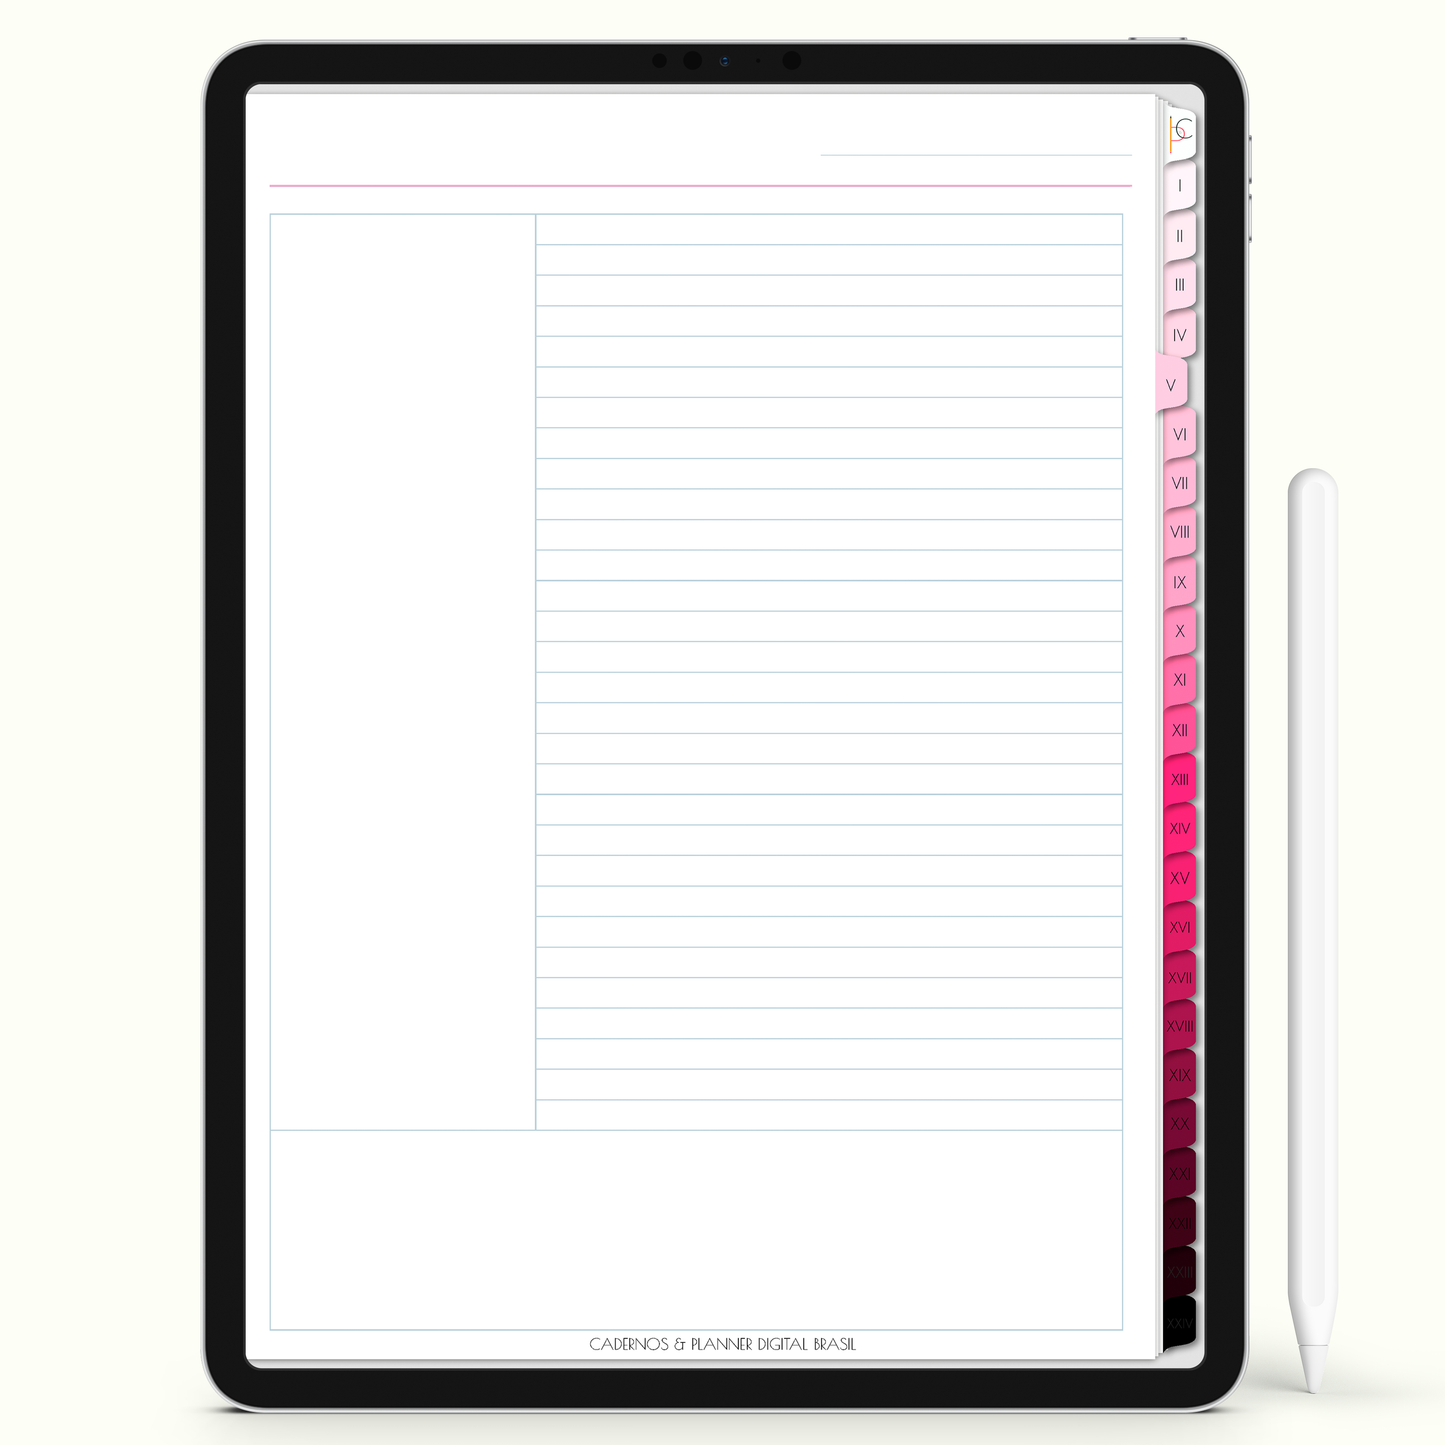 Caderno Digital Blush 24 Matérias - Página Método Cornell do Caderno Digital para iPad e Tablet Android. Cadernos & Planner Digital Brasil